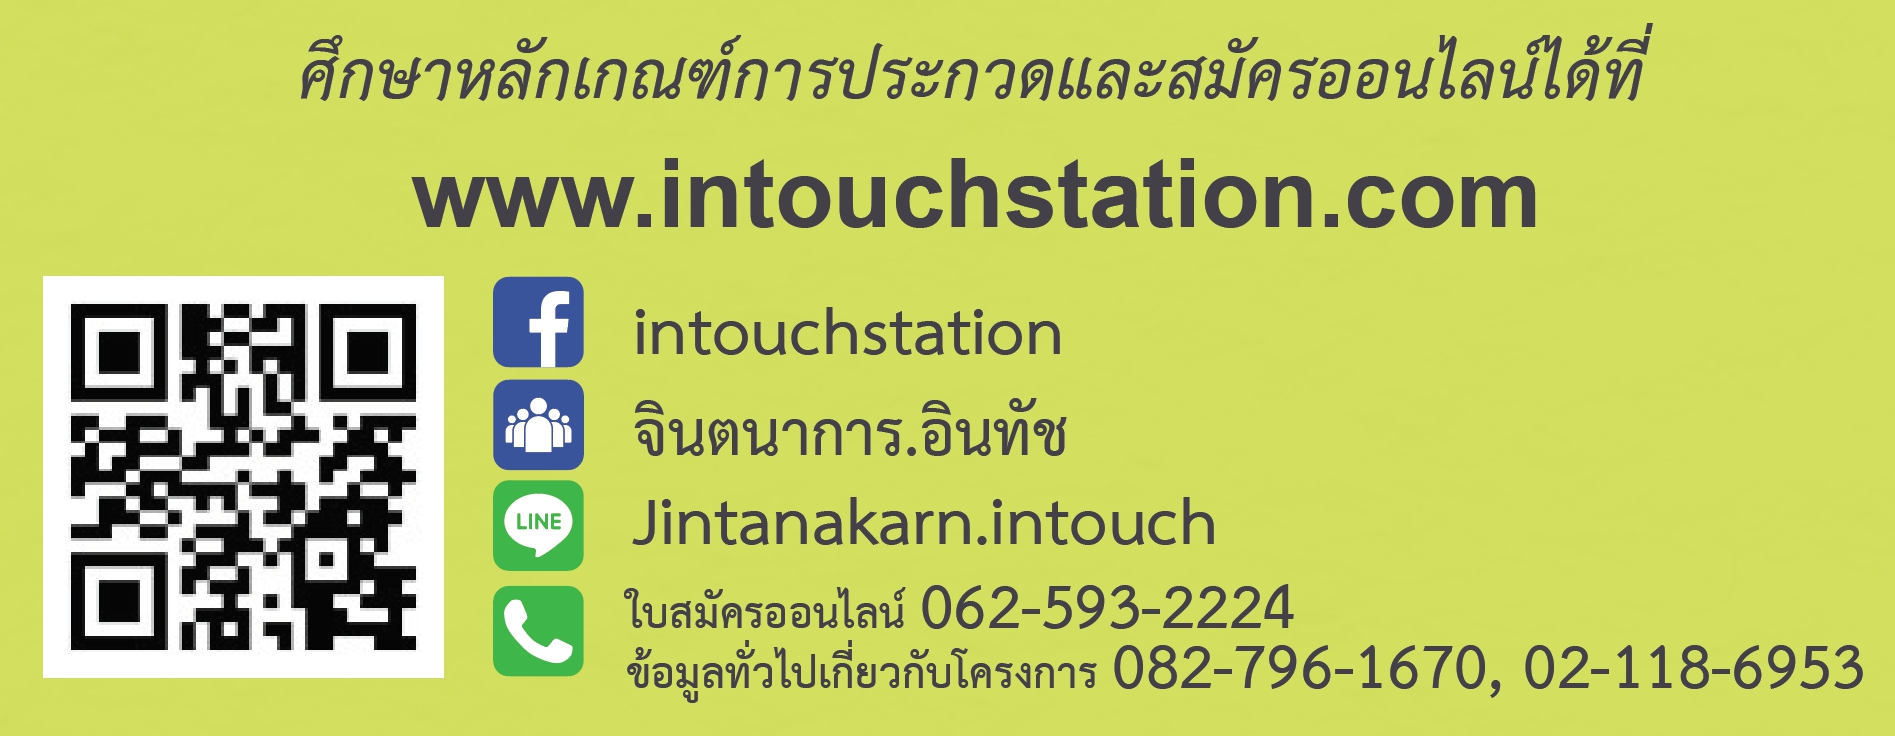 ขอเชิญนักศึกษาเข้าร่วมโครงการจินตนาการ สืบสาน วรรณกรรมไทยกับอินทัช ปีที่ 14 ประจำปี 2563